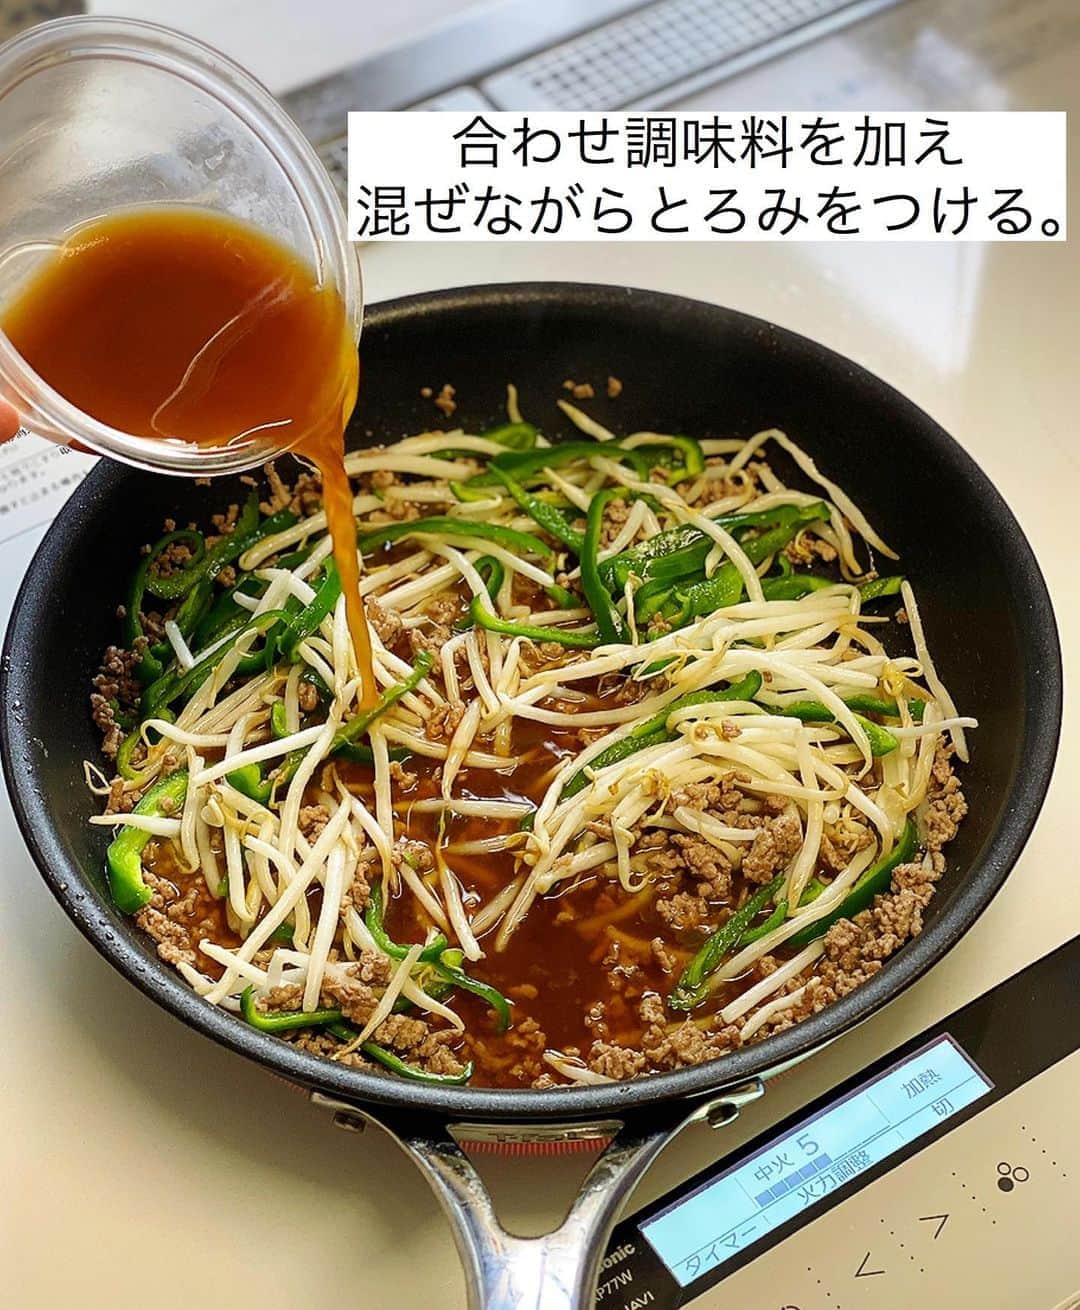 Mizuki【料理ブロガー・簡単レシピ】さんのインスタグラム写真 - (Mizuki【料理ブロガー・簡単レシピ】Instagram)「・﻿ 【レシピ】ーーーーーーーーーーーー﻿ ♡ひき肉ともやしのあんかけ炒め♡﻿ ーーーーーーーーーーーーーーーーー﻿ ﻿ ﻿ ﻿ おはようございます(*^^*)﻿ ﻿ 今日はコスパ抜群の節約おかず！﻿ ［ひき肉ともやしのあんかけ炒め］を﻿ ご紹介させていただきます♩﻿ これ、おかずとしてはもちろん﻿ ごはんや麺にかけても美味しいですよ♡﻿ ﻿ 作り方は超簡単(*´艸`)﻿ さっと炒めてさっと煮るだけ！﻿ 合わせ調味料に片栗粉を加えているので﻿ 面倒なとろみ付けも必要ありません♩﻿ ﻿ ﻿ ﻿ ーーーーーーーーーーーーーーーーーーーー﻿ 【2人分】﻿ 豚ひき肉...150g﻿ もやし...1/2袋(100g)﻿ ピーマン...2個﻿ ごま油...小2﻿ ●水...150ml﻿ ●みりん・オイスターソース...各大1﻿ ●醤油・片栗粉...各小2﻿ ●にんにくチューブ...2cm﻿ ﻿ 1.ピーマンは細切りにする。●は合わせておく。﻿ 2.フライパンにごま油を中火で熱し、ひき肉を炒める。火が通ったらピーマンともやしを加えてさっと炒める。﻿ 3.●をもう一度混ぜてから加え、混ぜながらとろみが付くまで加熱する。﻿ ーーーーーーーーーーーーーーーーーーーー﻿ ﻿ ﻿ ﻿ 《ポイント》﻿ ♦︎合びき肉や鶏ひき肉で作ってもOK♩﻿ ♦︎ピーマンがなければひき肉ともやしだけでも美味しく作れます♩﻿ ﻿ ﻿ ﻿ ﻿ ﻿ ﻿ ＿＿＿＿＿＿＿＿＿＿＿＿＿＿＿＿＿＿＿﻿ 📕7刷重版しました📕﻿ 簡単・時短！ 毎日のごはんがラクになる﻿ ✨🦋 【 #Mizukiの今どき和食 】🦋✨﻿ ＿＿＿＿＿＿＿＿＿＿＿＿＿＿＿＿＿＿＿﻿ なるべく少ない材料で﻿ 手間も時間も省きながら﻿ 簡単にできるおいしい和食レシピ♩﻿ 簡単に失敗なくマスターできる一冊で﻿ もっと気軽に、カジュアルに﻿ 和食を楽しんで下さいね(*^^*)﻿ ＿＿＿＿＿＿＿＿＿＿＿＿＿＿＿＿＿＿＿﻿ ﻿ ﻿ ﻿ ＿＿＿＿＿＿＿＿＿＿＿＿＿＿＿＿＿＿＿﻿ 🎀6刷重版しました🎀﻿ 混ぜて焼くだけ。はじめてでも失敗しない！﻿ 【#ホットケーキミックスのお菓子 】﻿ ﻿ 一冊まるっとホケミスイーツ♩﻿ 普段のおやつから﻿ 特別な日にも使えるレシピを﻿ この一冊に詰め込みました(*^^*)﻿ ホットケーキミックスを使えば﻿ 簡単に本格的なお菓子が作れますよ♡﻿ ＿＿＿＿＿＿＿＿＿＿＿＿＿＿＿＿＿﻿ ﻿ ﻿ ﻿ ﻿ ￣￣￣￣￣￣￣￣￣￣￣￣￣￣￣￣￣￣﻿ レシピを作って下さった際や﻿ レシピ本についてのご投稿には﻿ タグ付け( @mizuki_31cafe )して﻿ お知らせいただけると嬉しいです😊💕﻿ ＿＿＿＿＿＿＿＿＿＿＿＿＿＿＿＿＿＿﻿ ﻿ ﻿ ﻿ ﻿ ﻿ #ひき肉#もやし#ピーマン#あんかけ﻿ #Mizuki#簡単レシピ#時短レシピ#節約レシピ#料理#レシピ#フーディーテーブル#マカロニメイト#おうちごはん#デリスタグラマー#料理好きな人と繋がりたい#食べ物#料理記録#おうちごはんlover#写真好きな人と繋がりたい#foodpic#cooking#recipe#lin_stagrammer#foodporn#yummy#ひき肉ともやしのあんかけ炒めm」8月22日 7時09分 - mizuki_31cafe